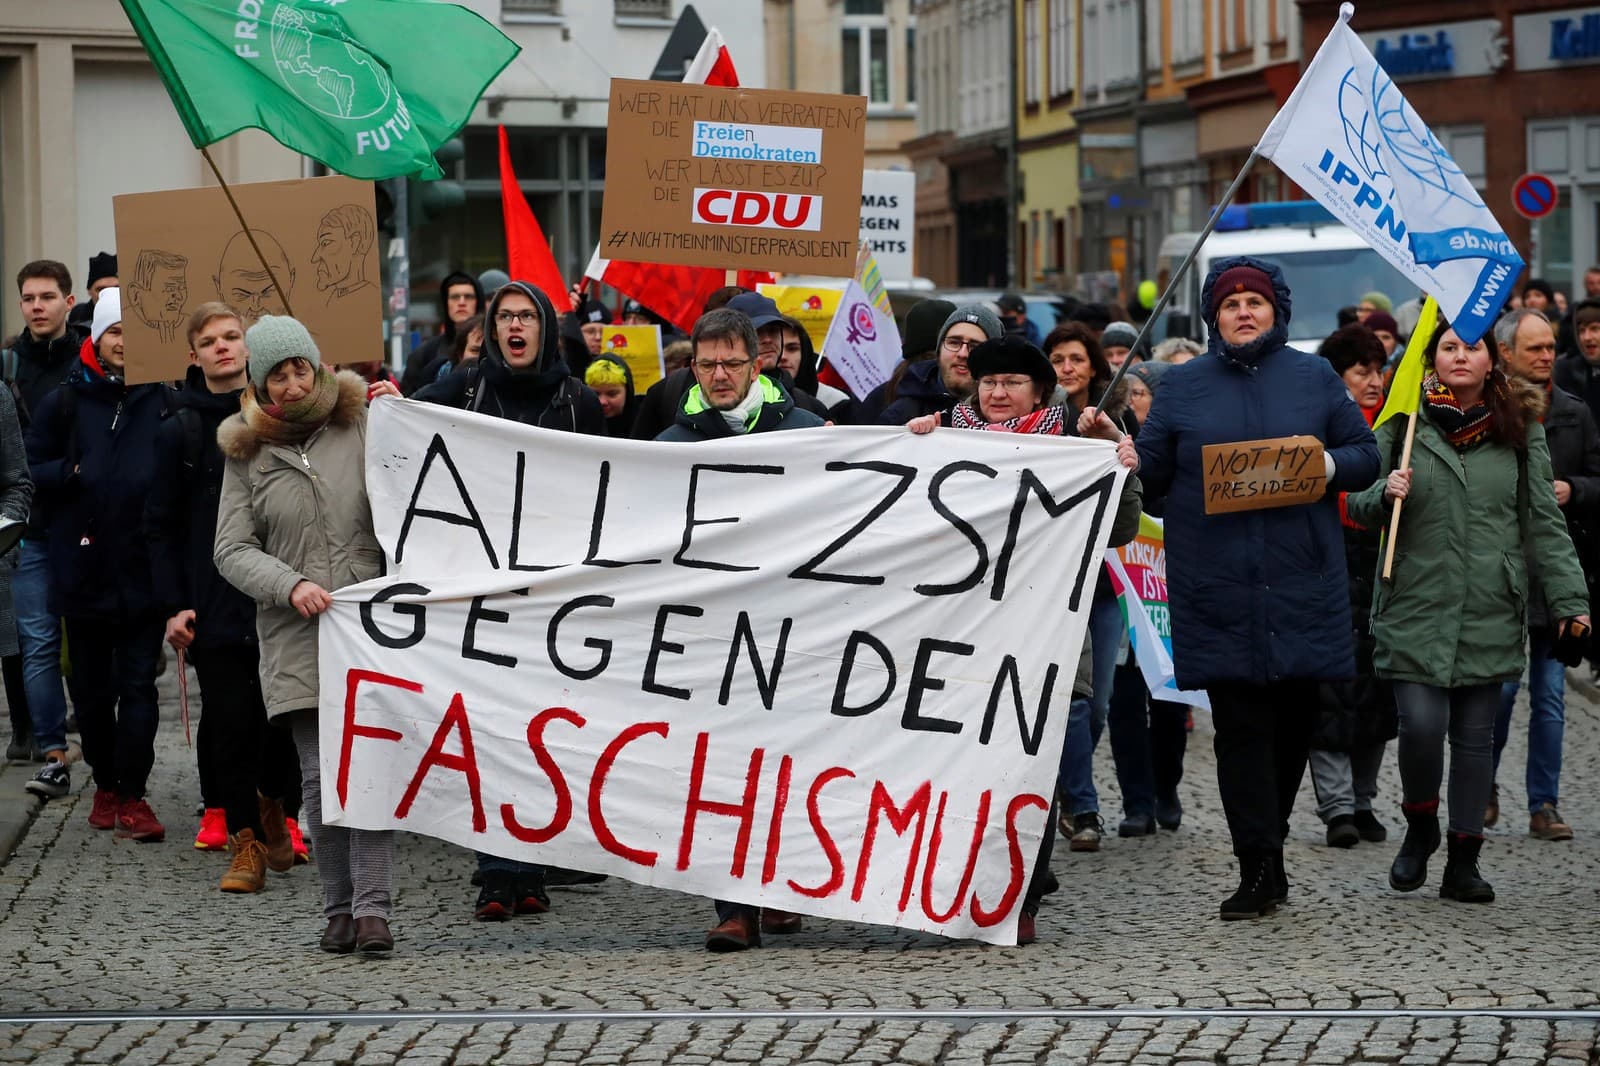 Milhares de manifestantes vão às ruas na Alemanha contra ‘acordos’ com a extrema direita